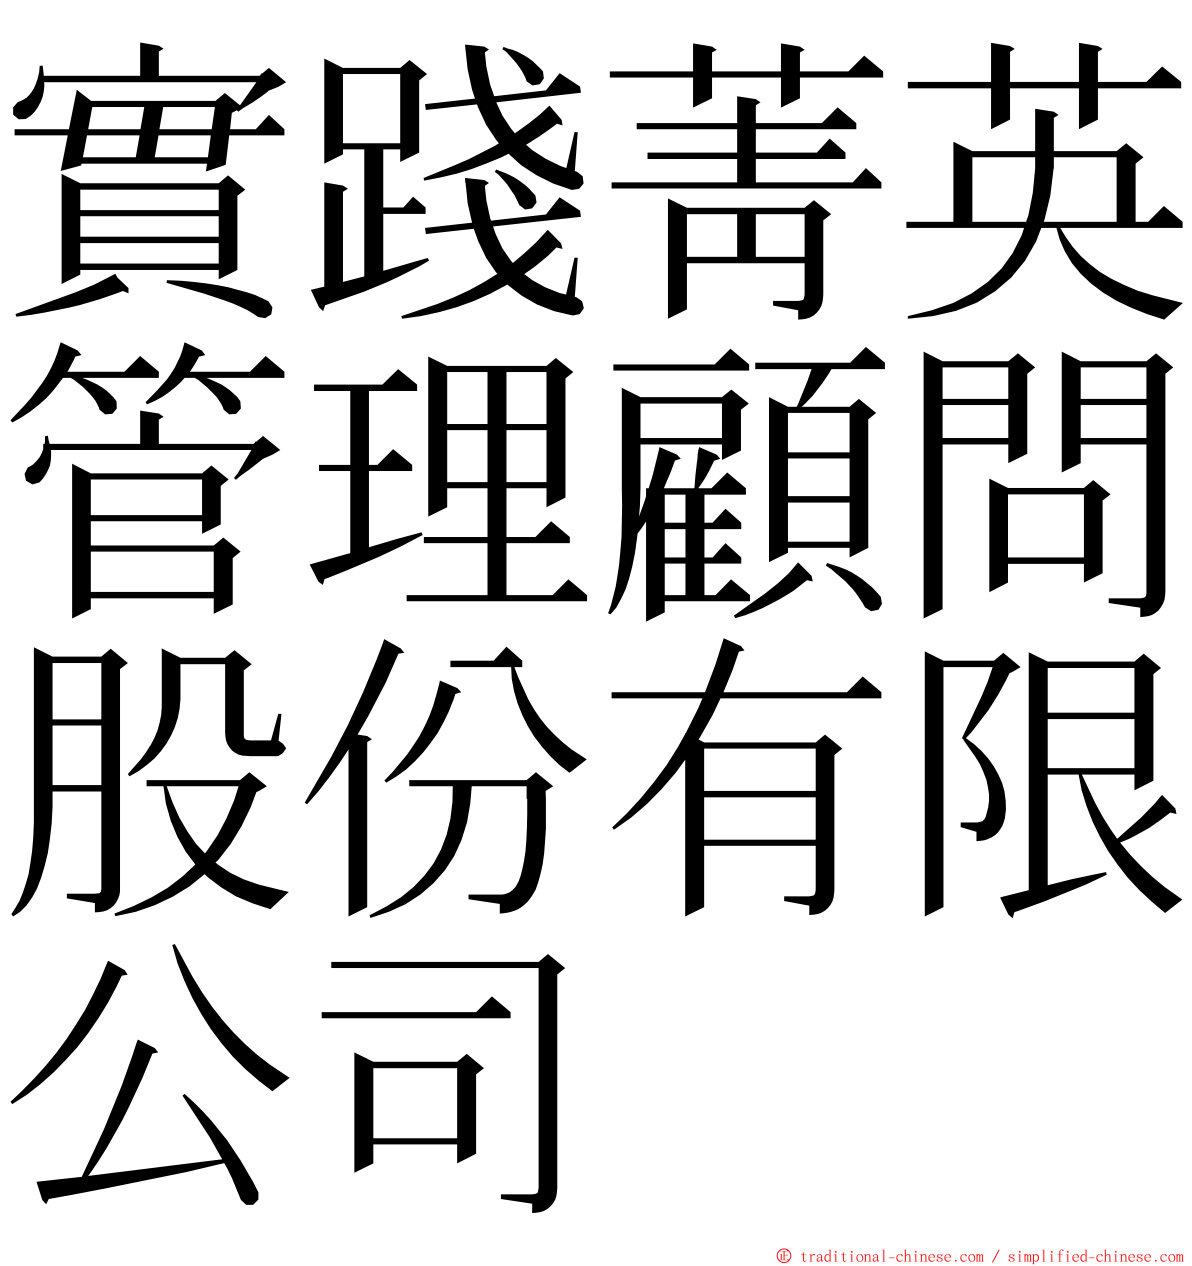 實踐菁英管理顧問股份有限公司 ming font